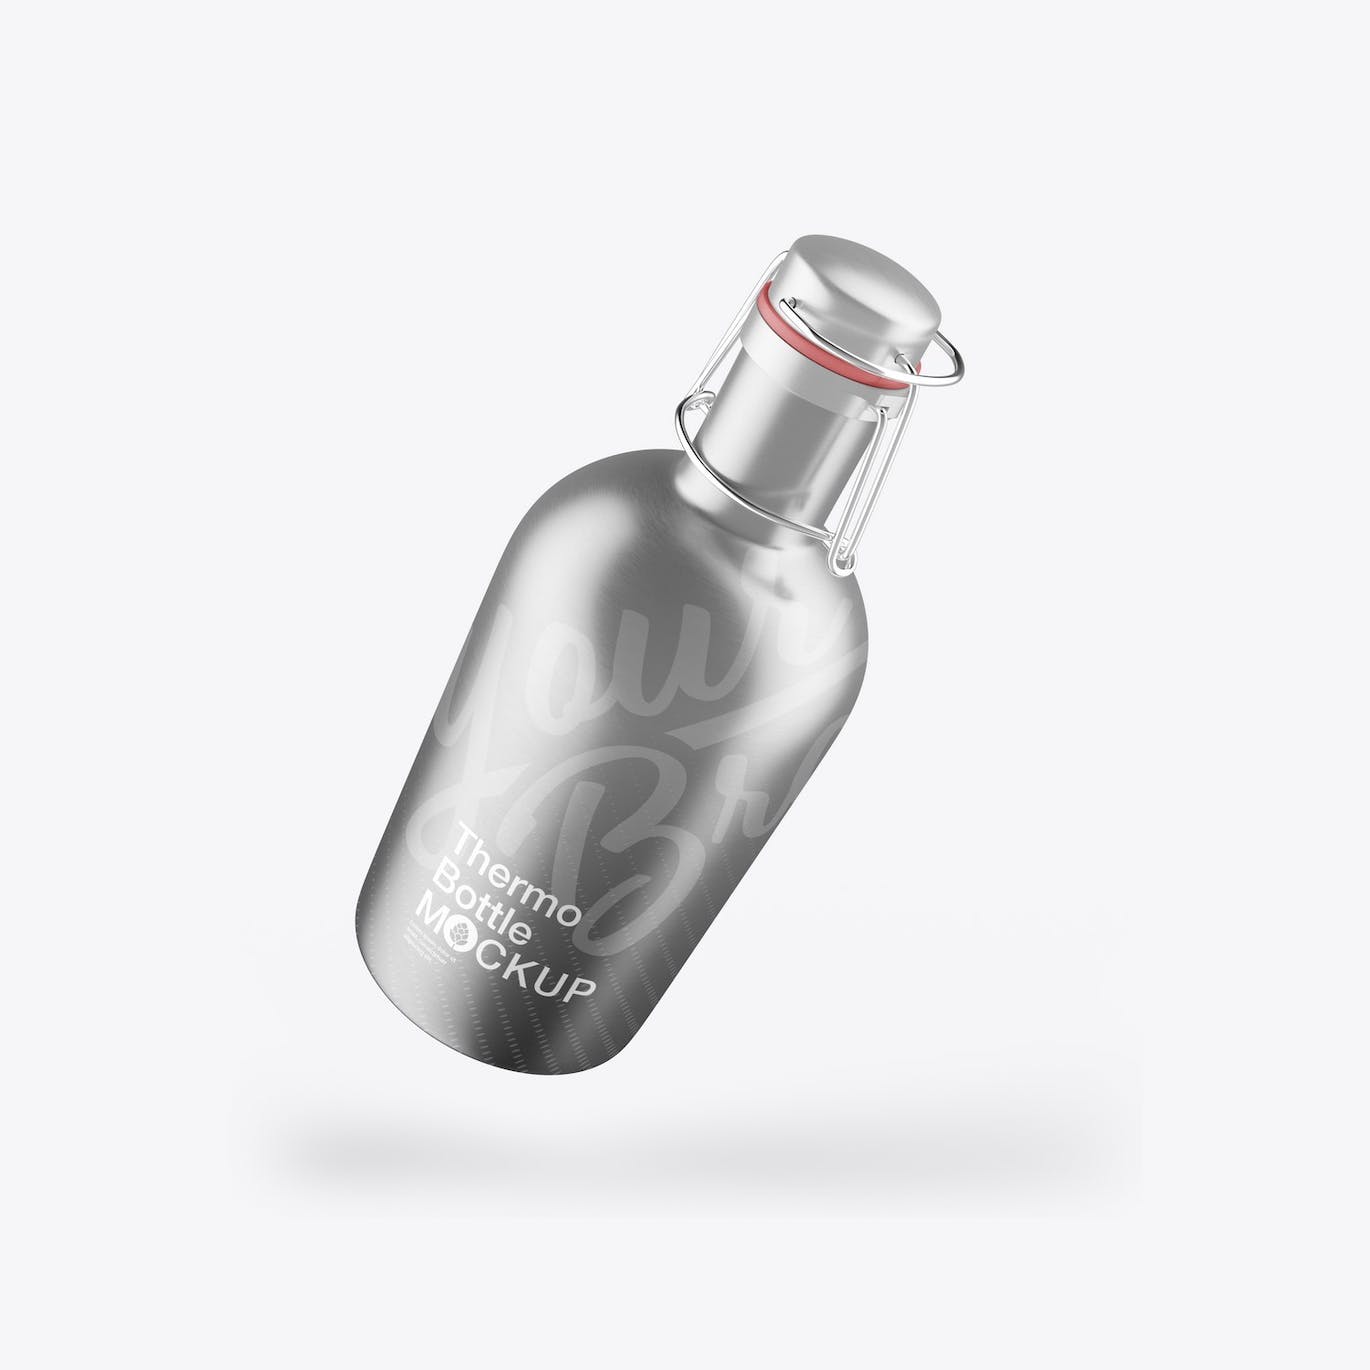 金属热水瓶包装设计样机 Thermo Bottle Mockup 样机素材 第4张